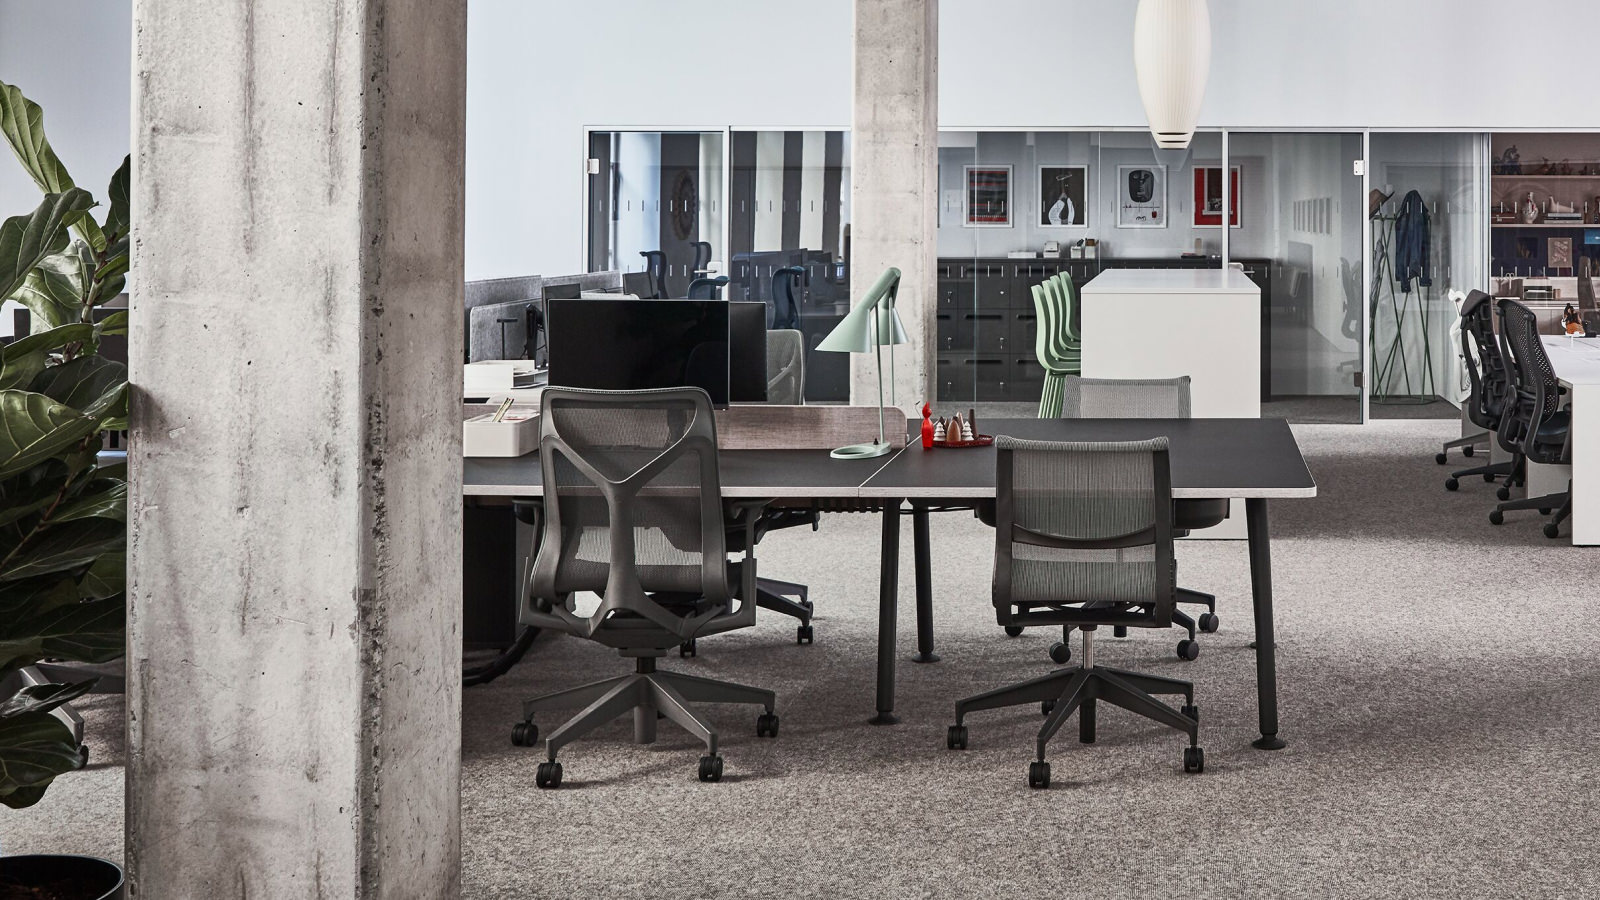 Ein Arbeitsplatz im Showroom in Paris mit Setu und Cosm Stühlen, die um einen schwarzen Memo Schreibtisch herum angeordnet sind.